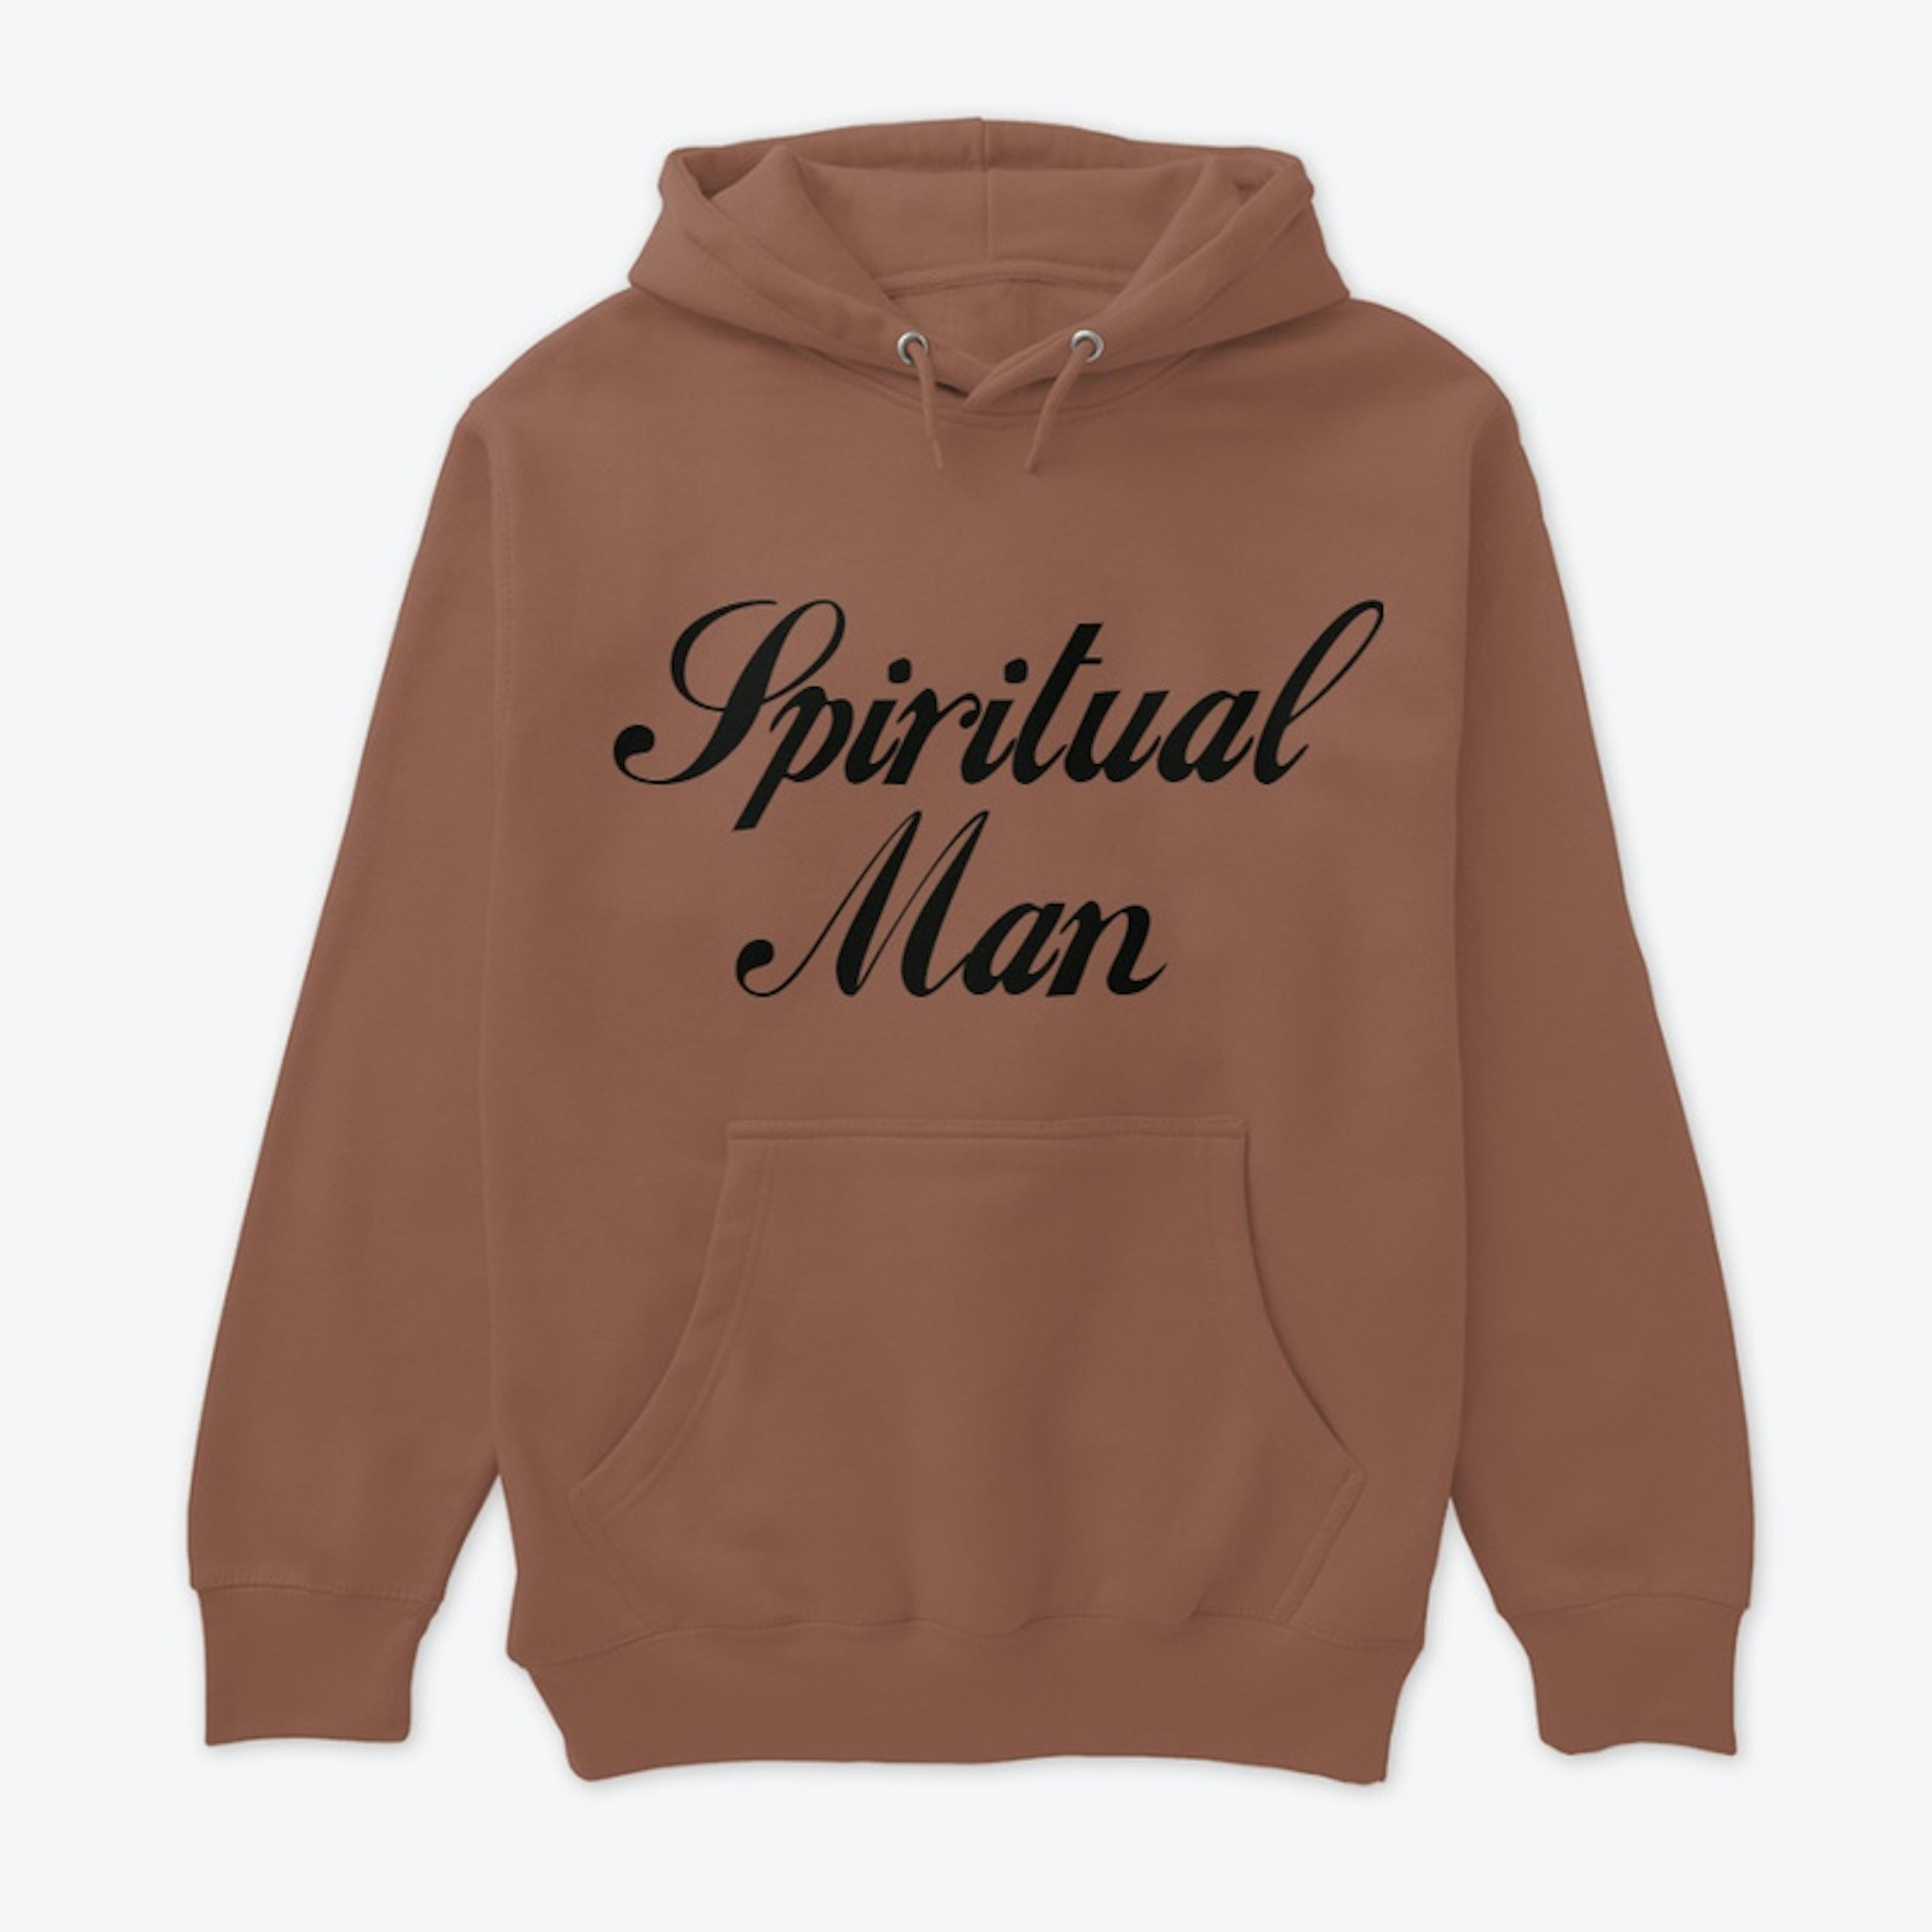 Spiritual Man hoodie